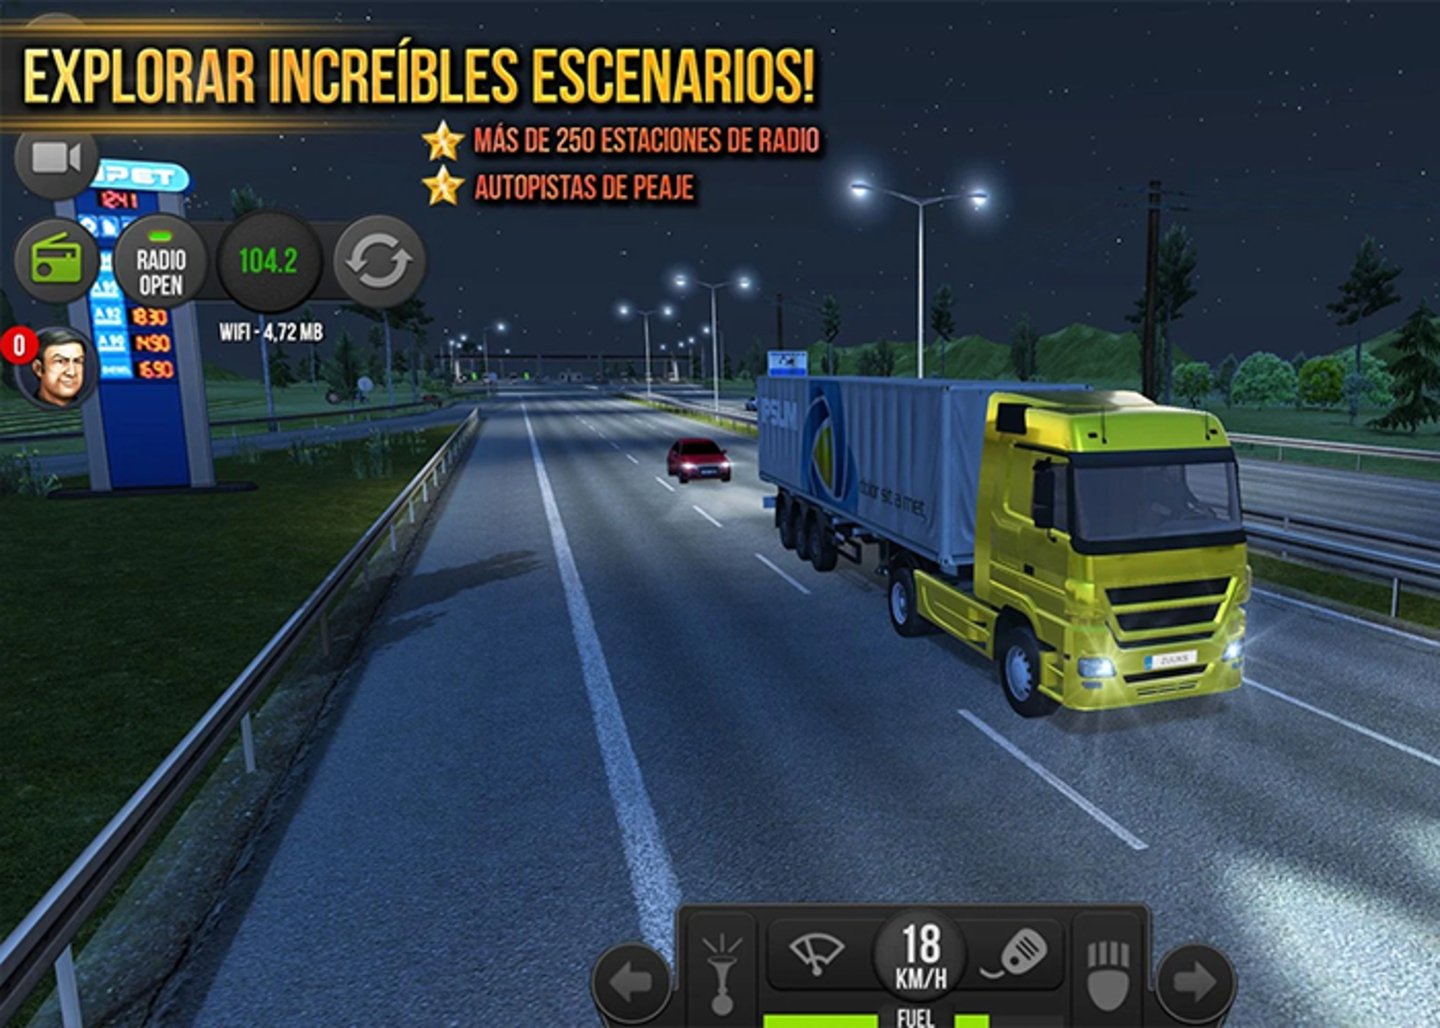 Vive la emocion de ser camionero en Europa con este increíble simulador